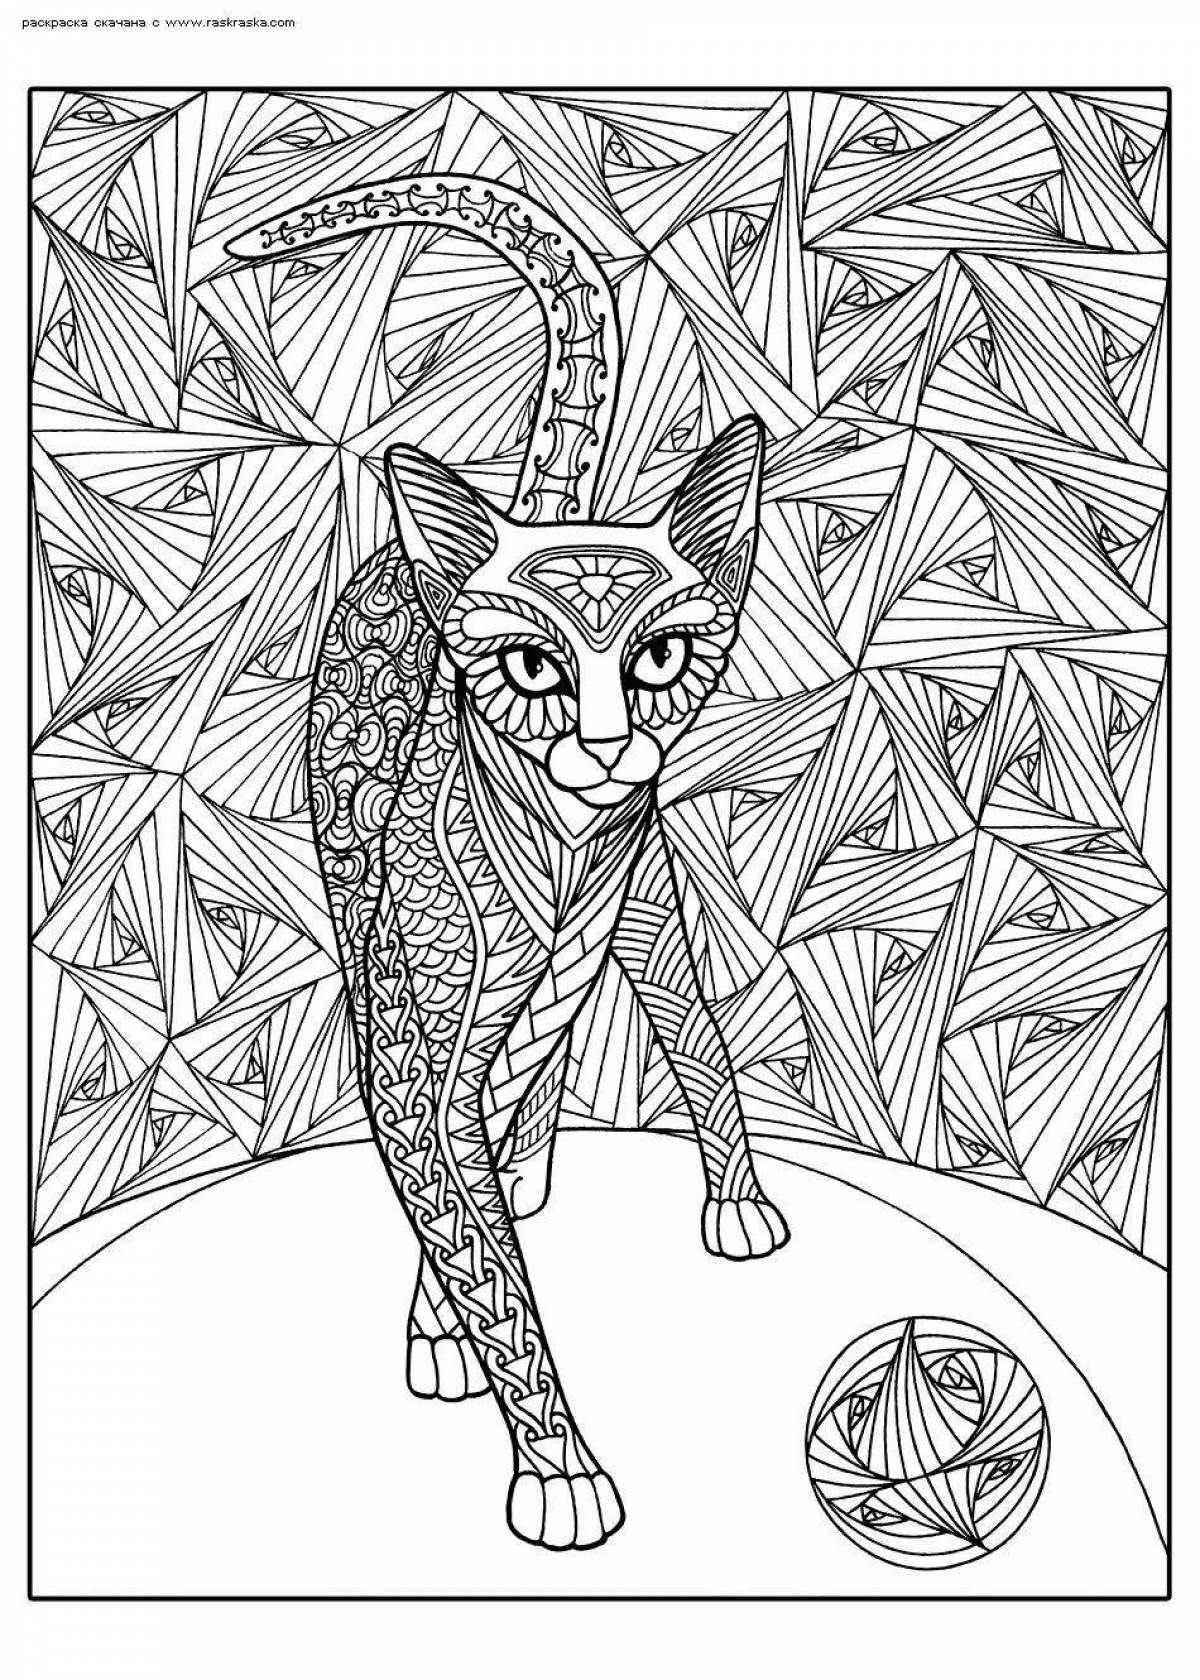 Violent cat coloring page art